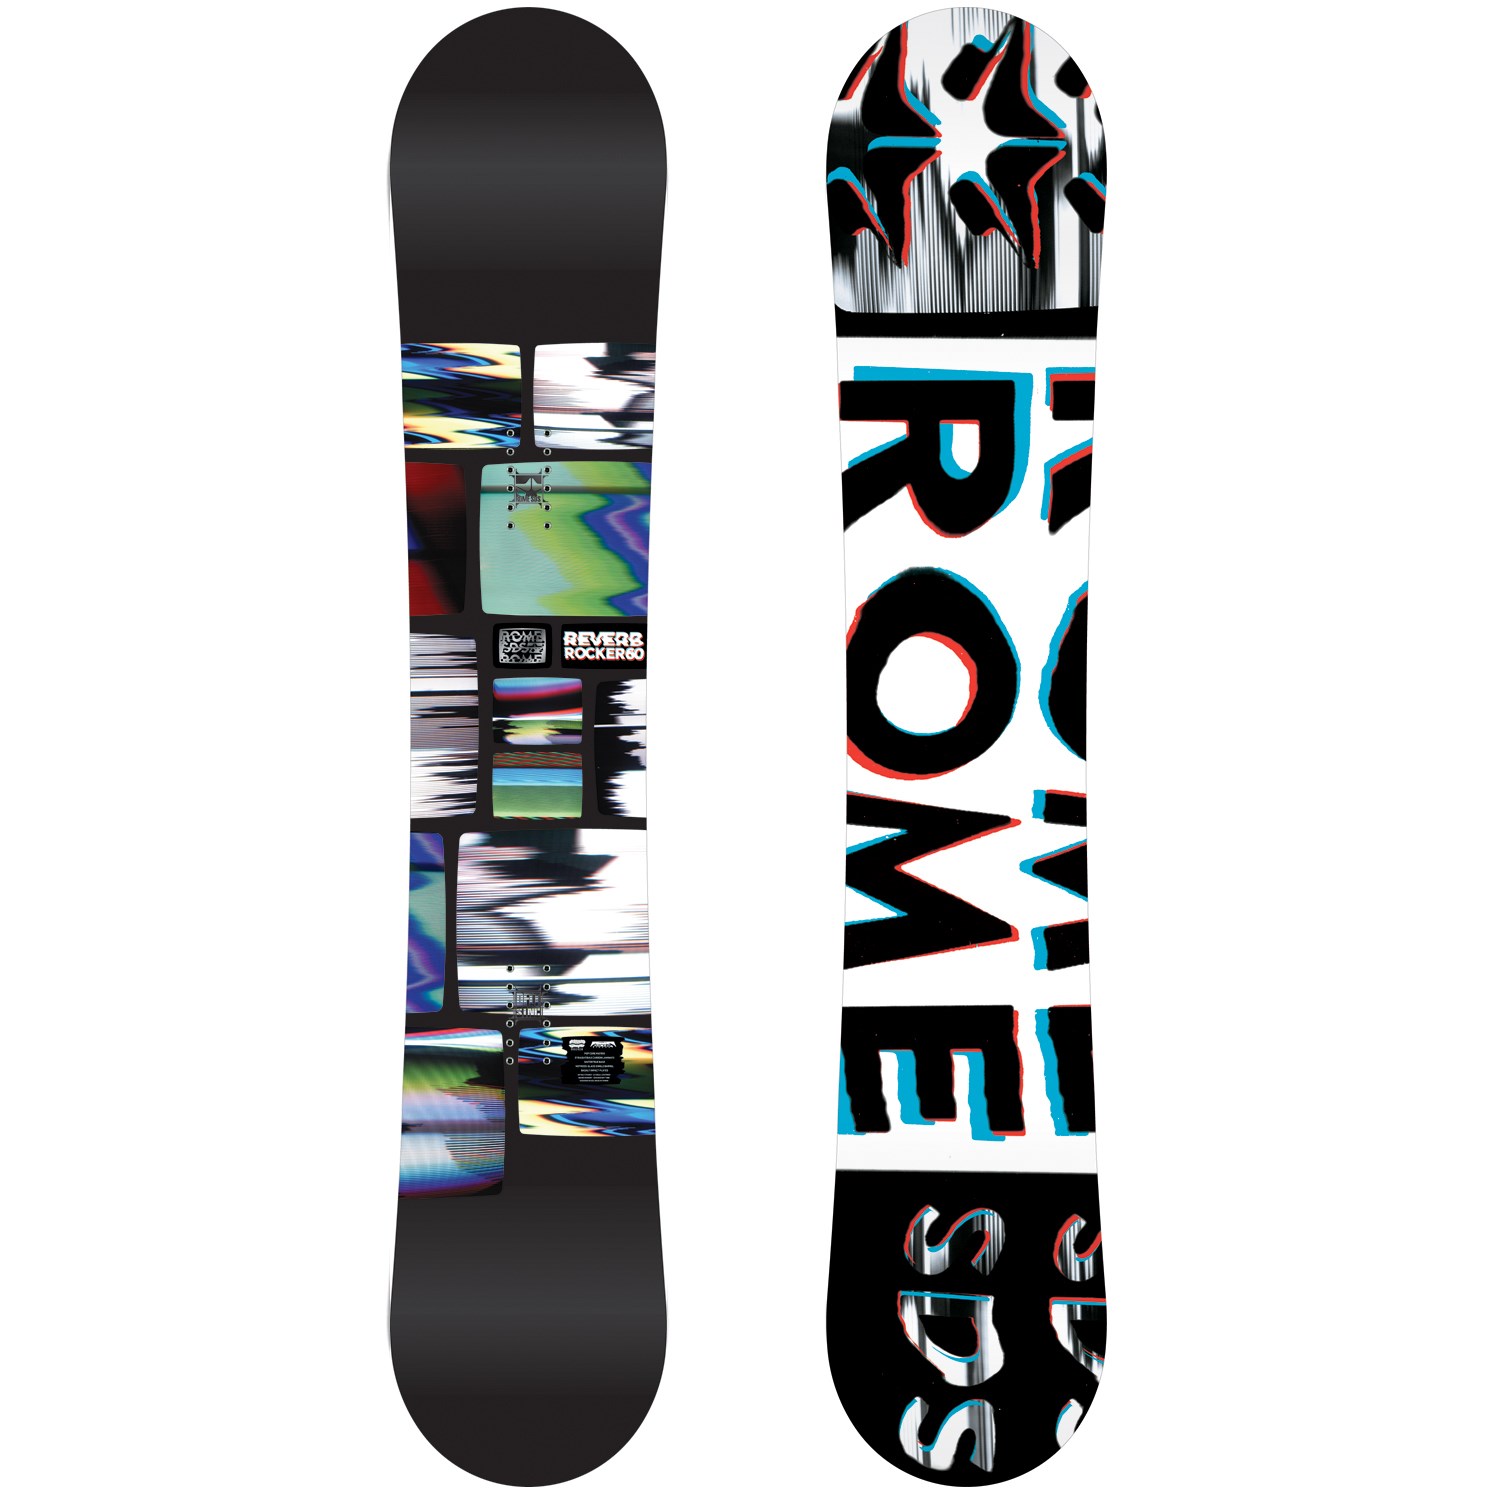 Rome Reverb Rocker Snowboard 2014 | evo